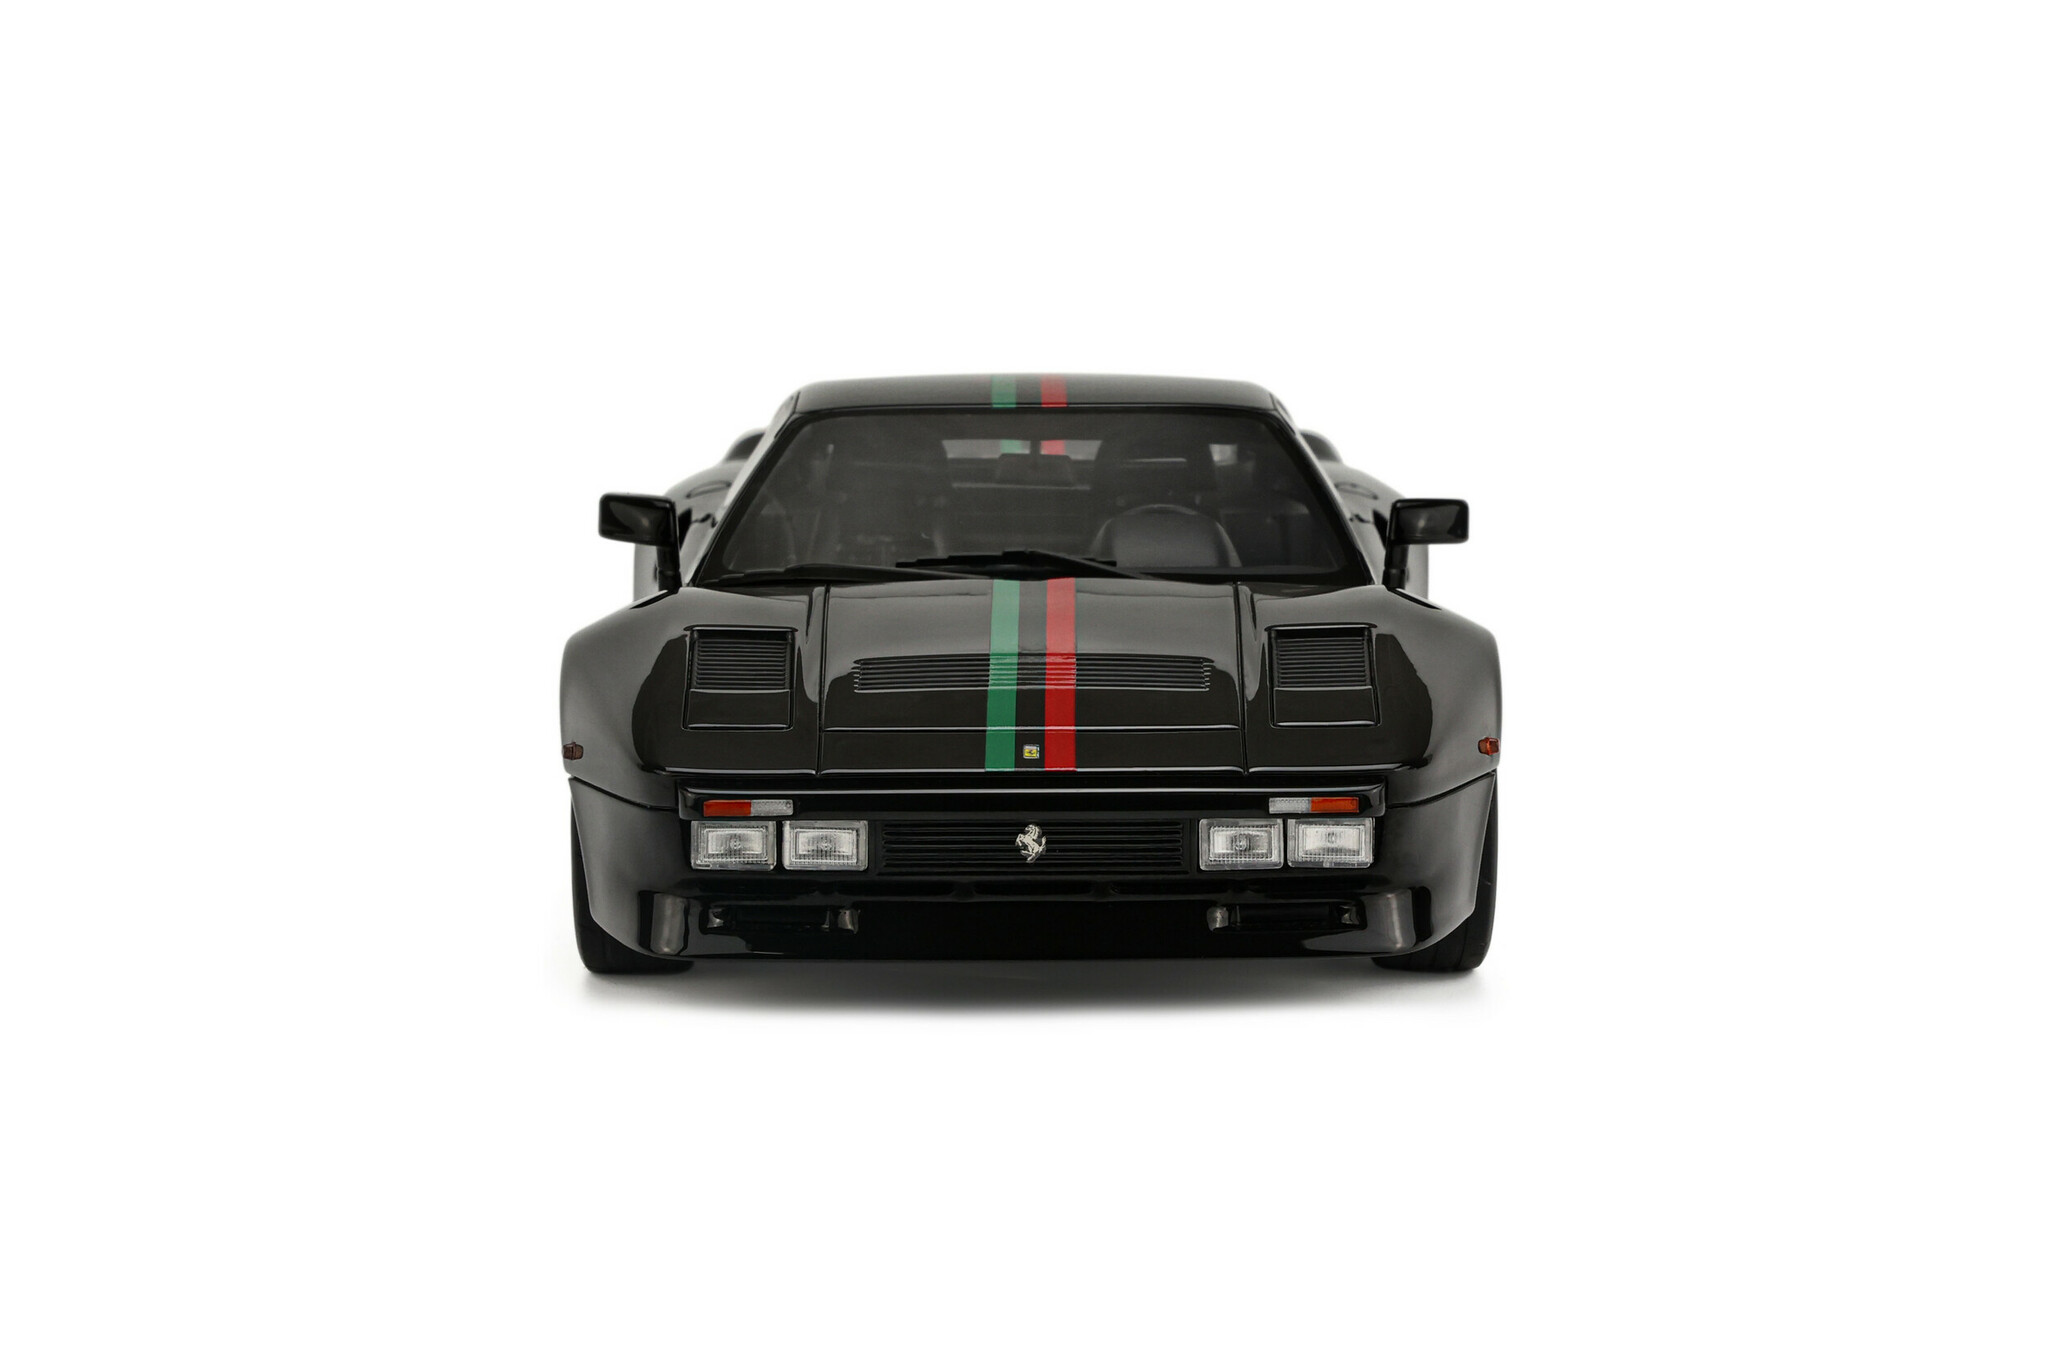 Skala 1/18 Ferrari 288 GTO 1984, Black fr GT Spirit (GT-876)